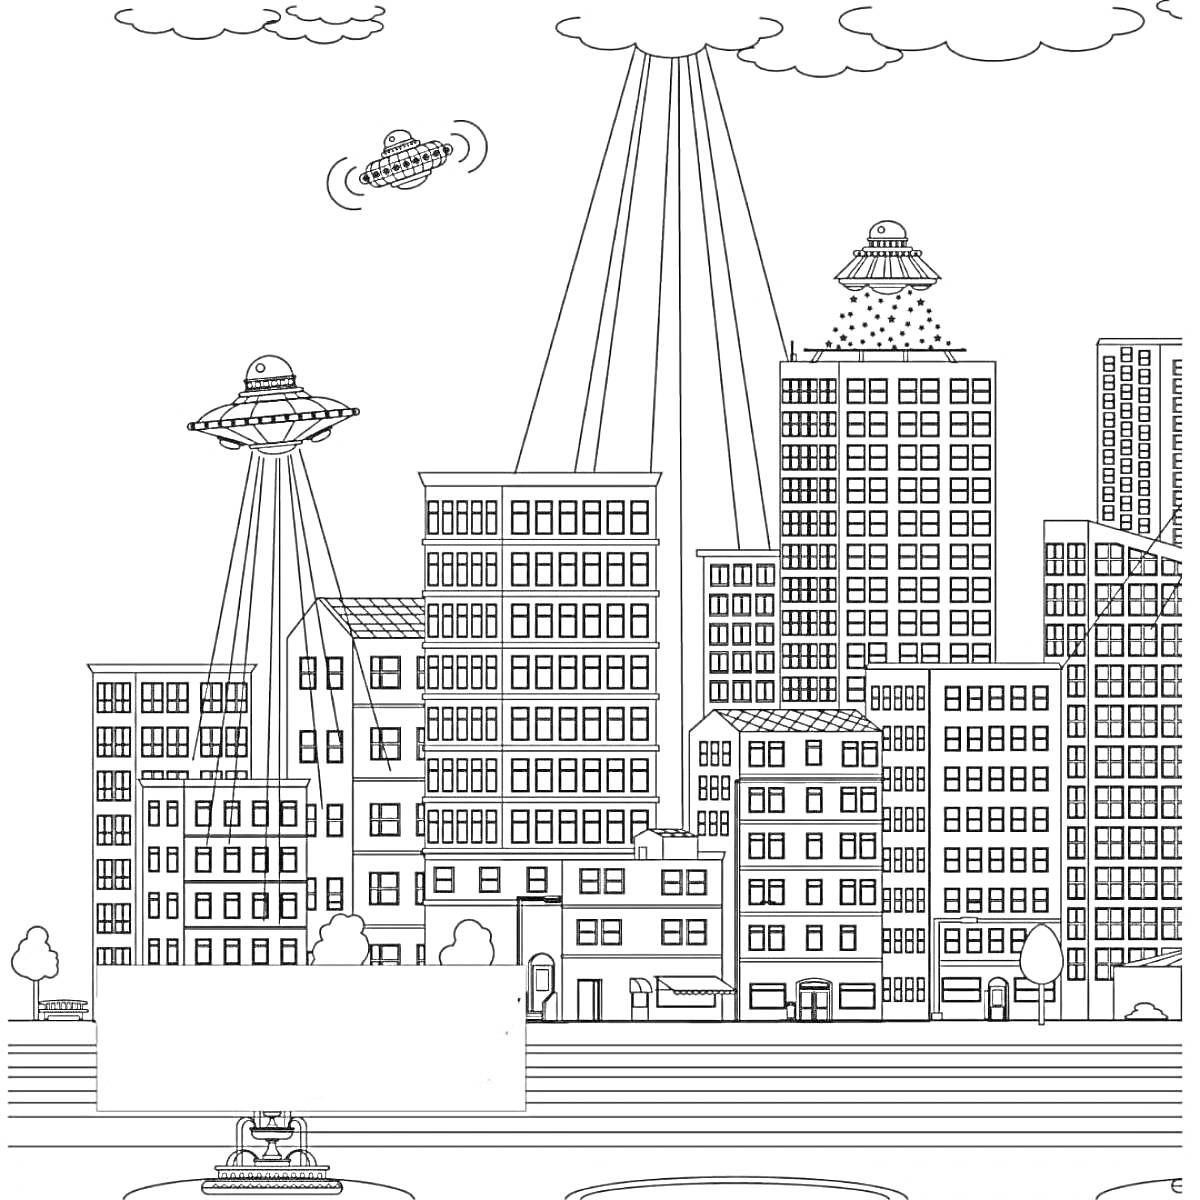 Город будущего с прилетающими НЛО, высокими зданиями, летающими кораблями и небоскребами